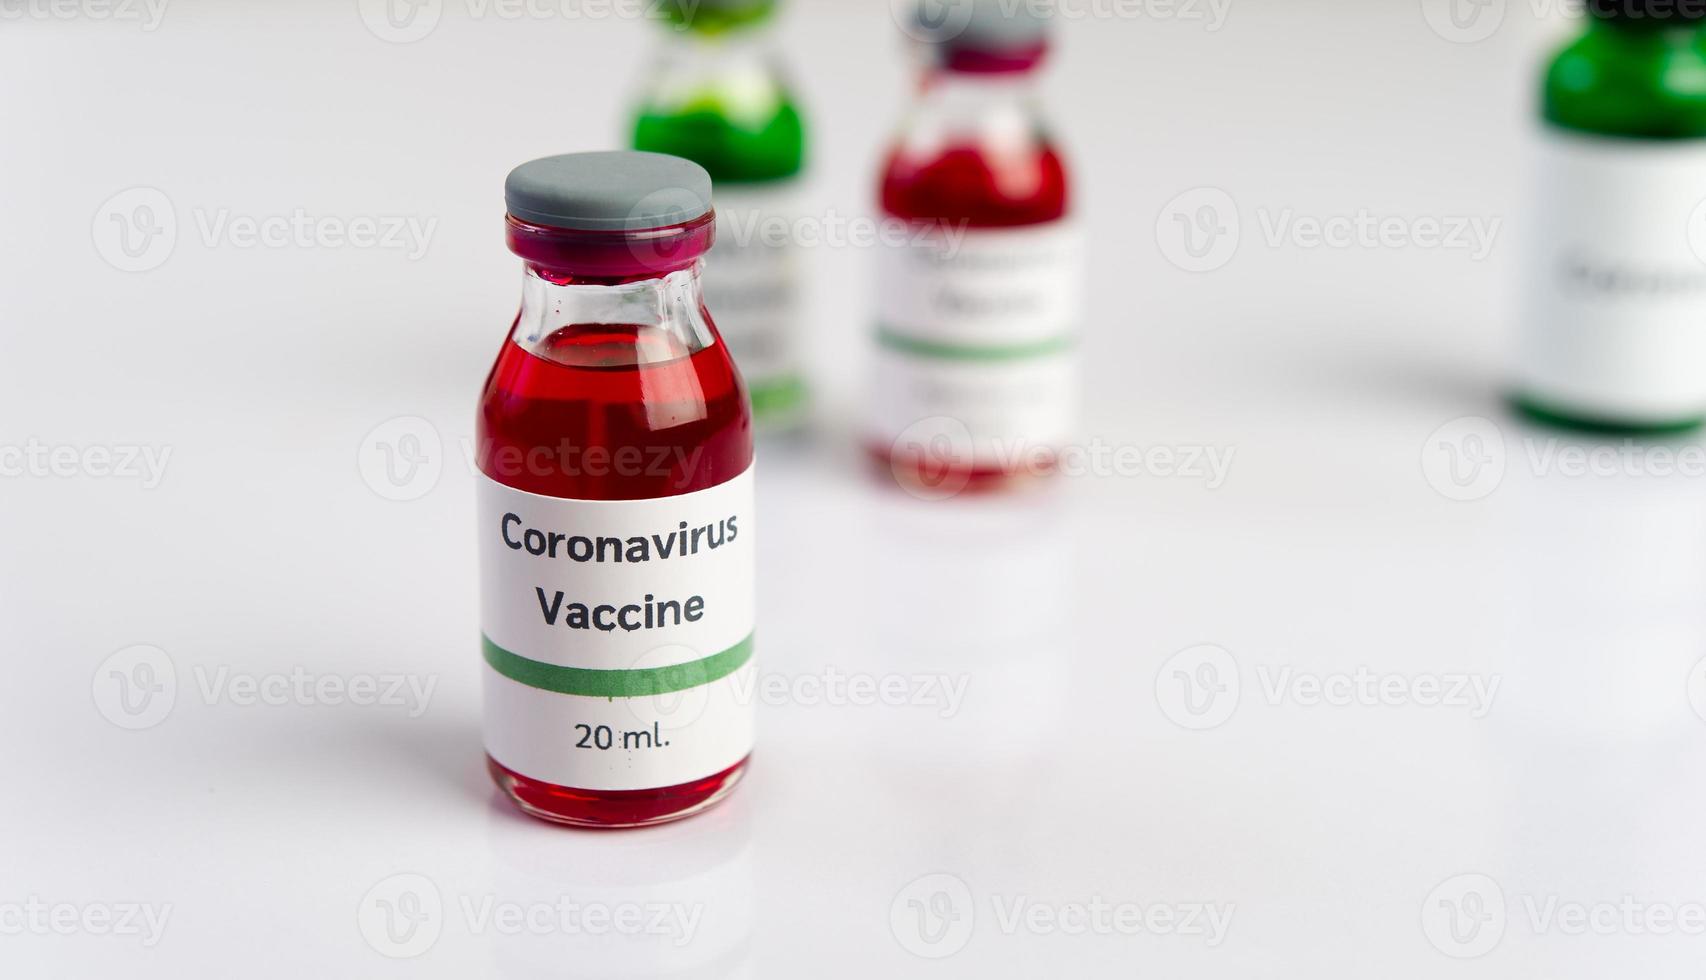 imunossupressores antivírus covid, imagens, simulações, imagens para desenvolvimento futuro e prevenção do vírus. foto